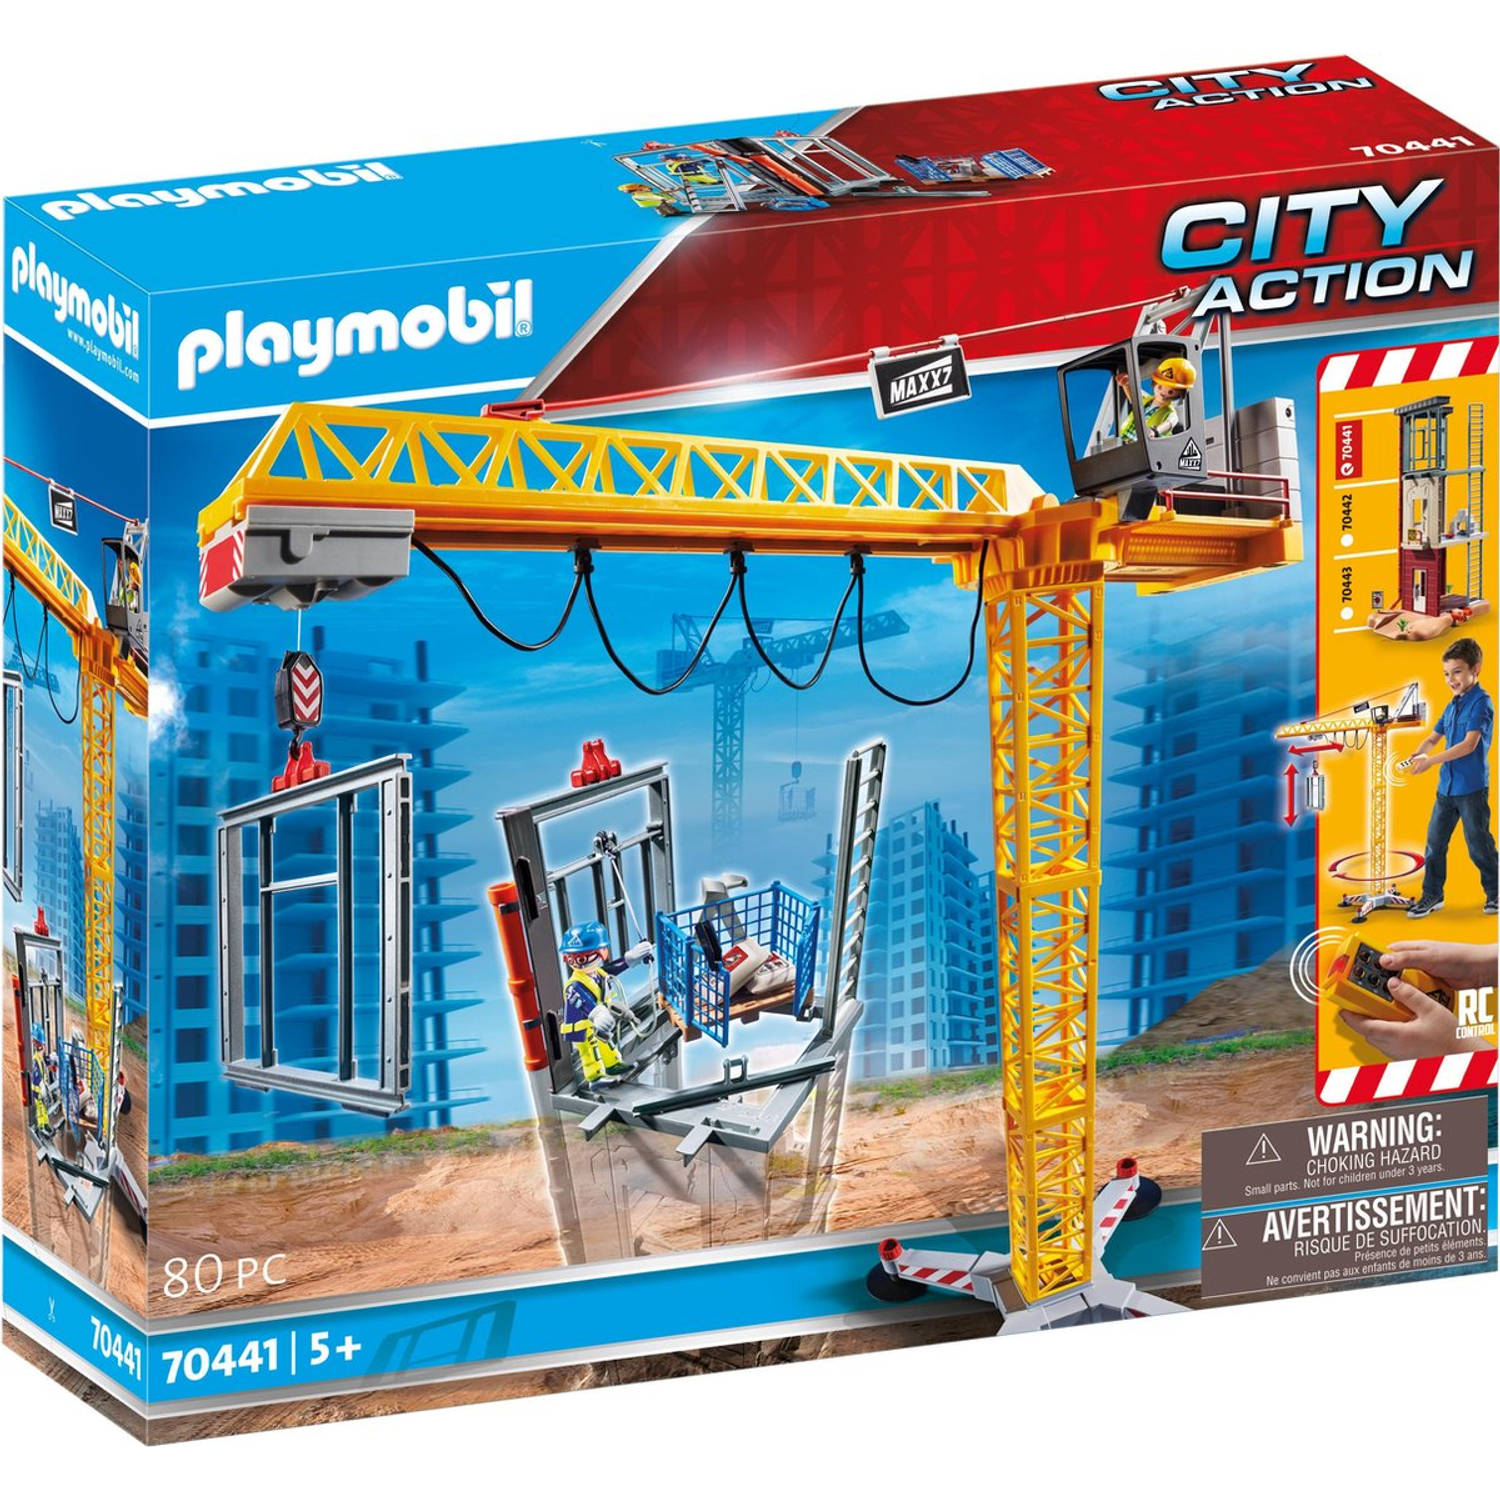 Playmobil City Action RC bouwkraan met 70441 | Blokker